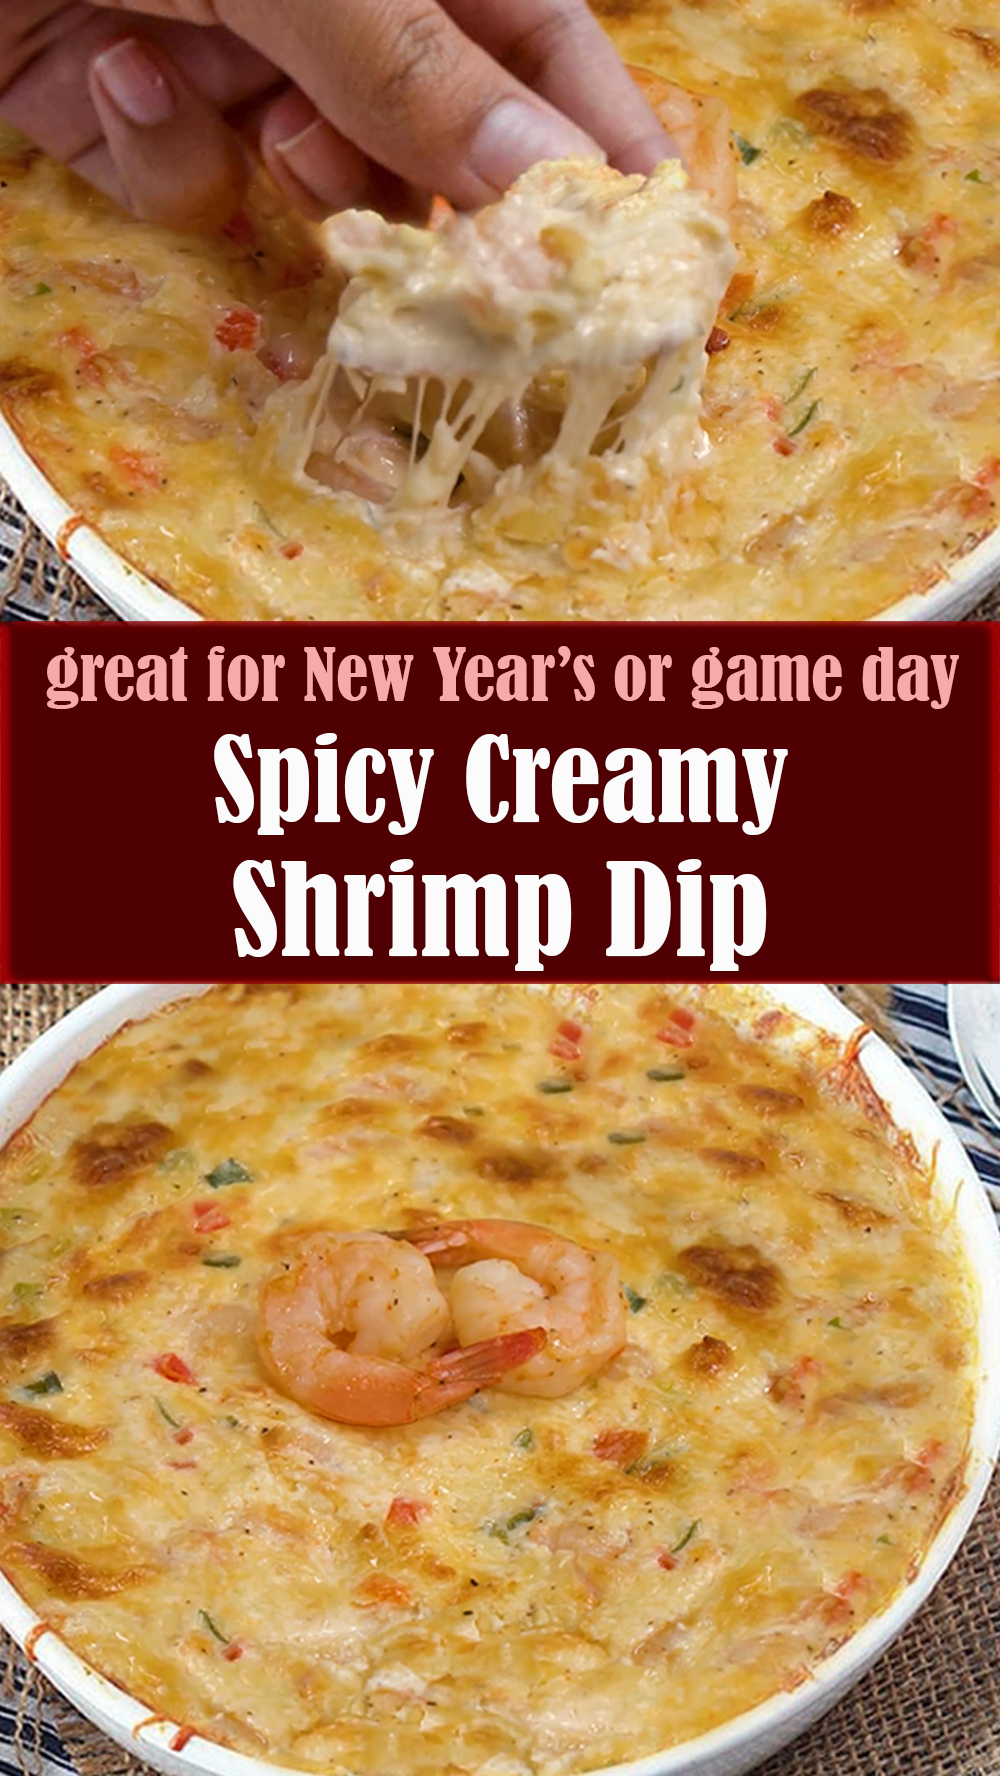 Spicy Creamy Shrimp Dip